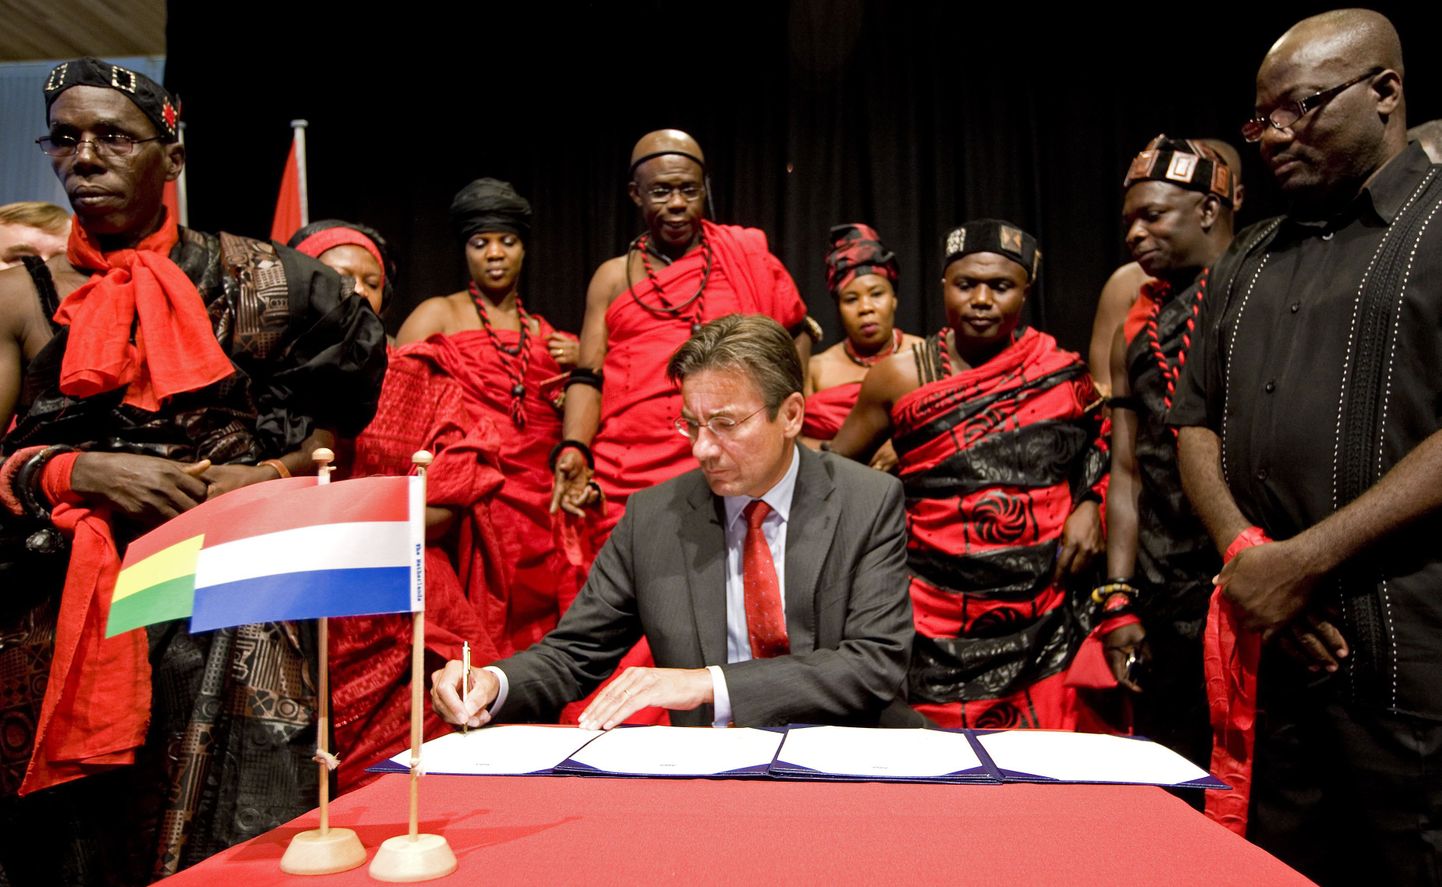 Hollandi välisminister Maxime Verhagen (keskel) kirjutamas alla dokumentidele, mille alusel tagastatakse Ghanasse kunagise hõimujuhi äraraiutud pea